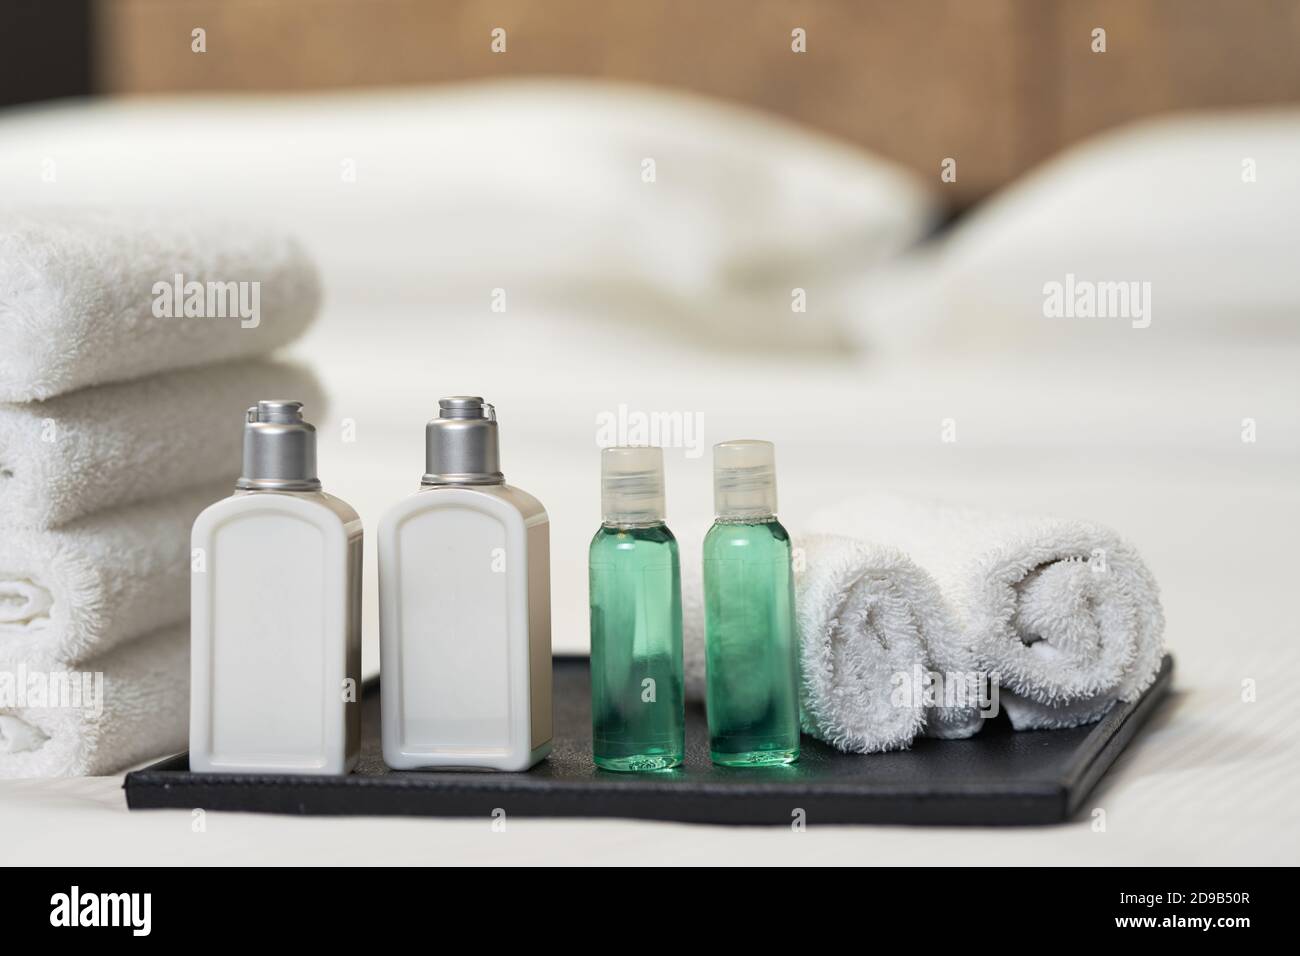 Nahaufnahme von wunderschön gefalteten weißen Handtüchern und Toilettenartikeln auf dem Bett im Hotelzimmer. Speicherplatz kopieren. Servicekonzept des Hotels Stockfoto